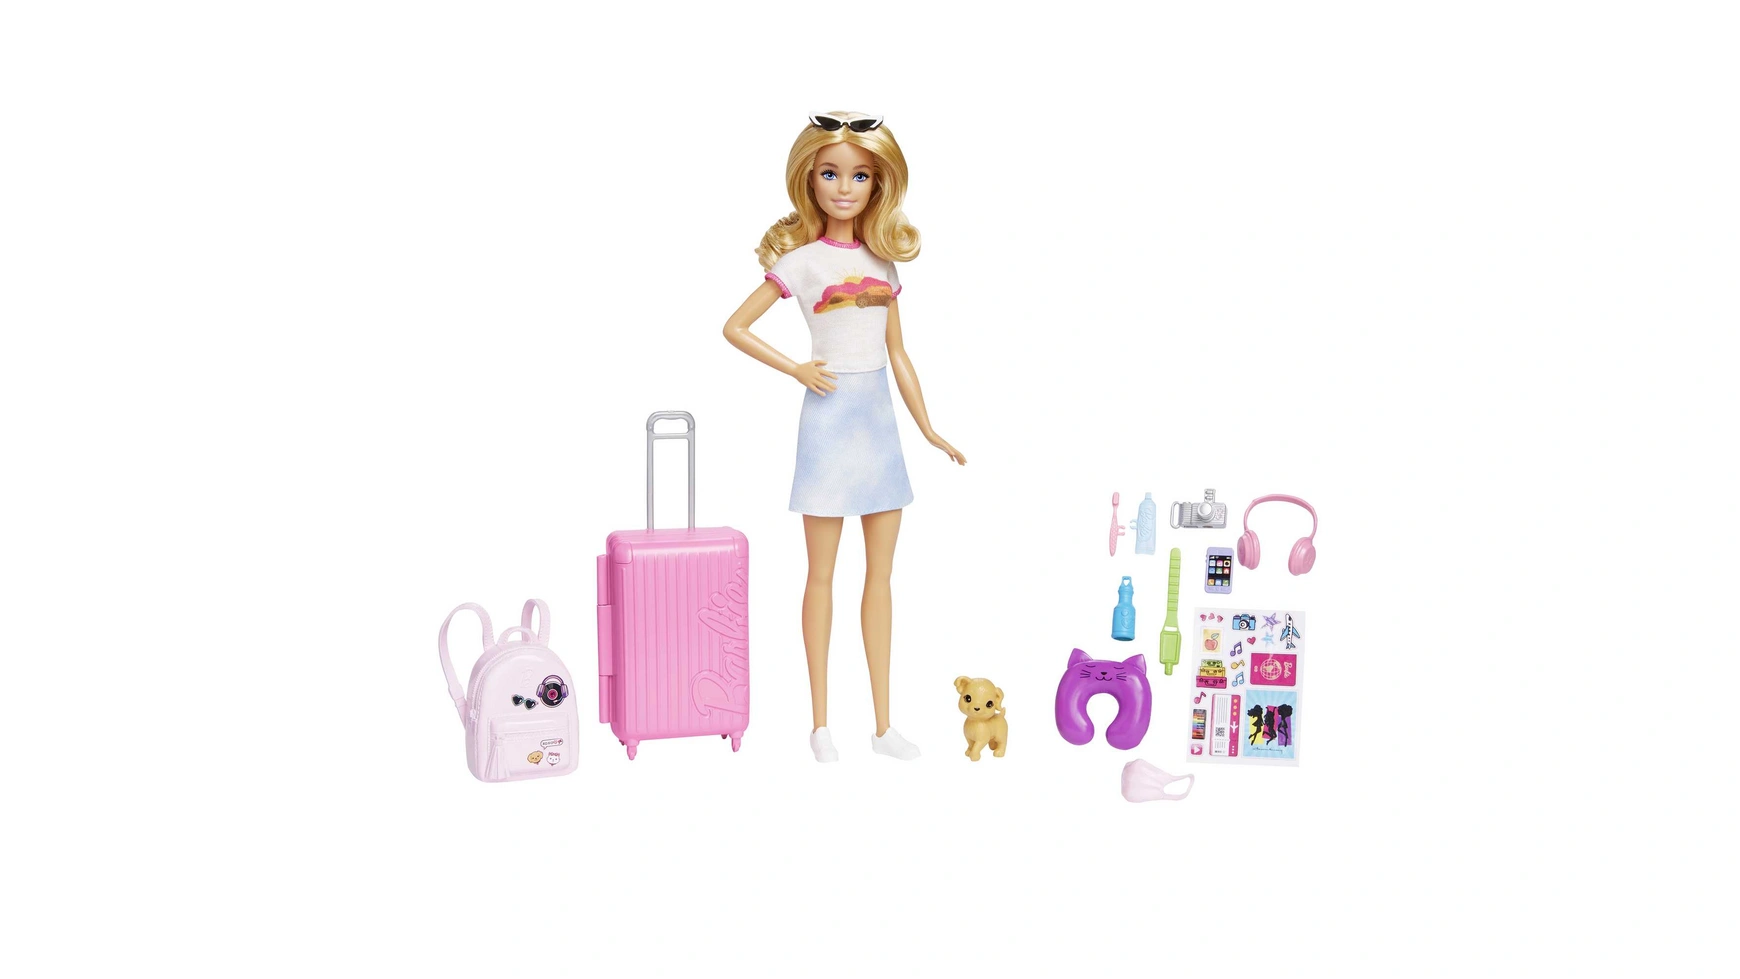 цена Дорожная кукла Barbie (блондинка), кукла-одевалка с собакой и праздничными аксессуарами